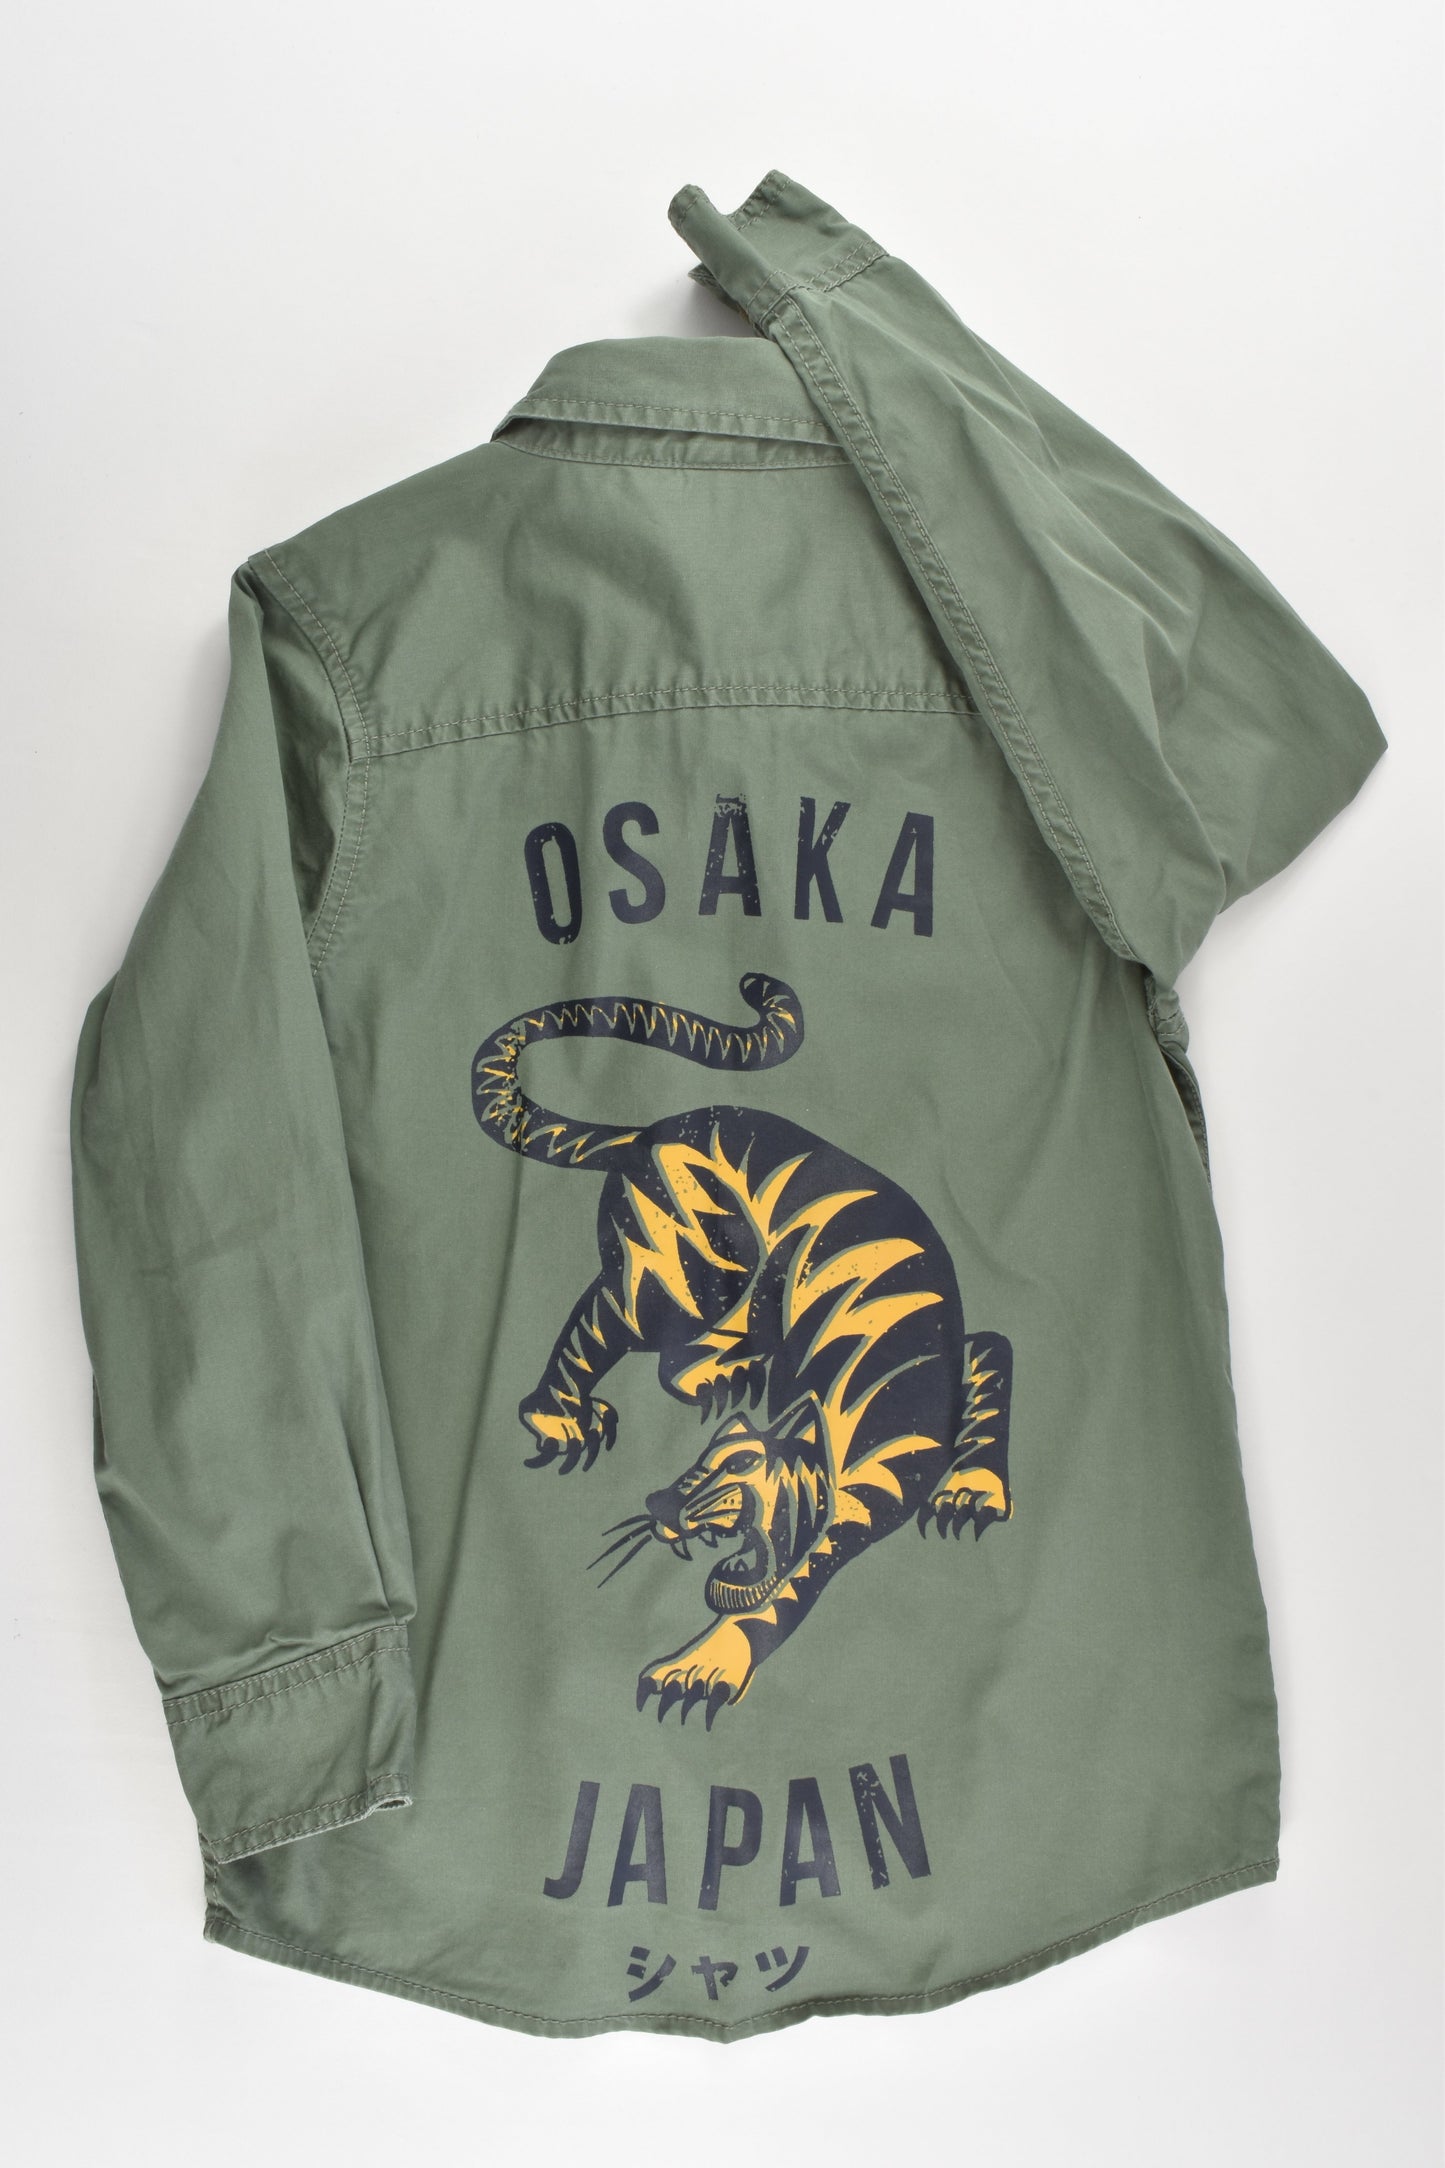 Anko Size 7 'Osaka' Shirt